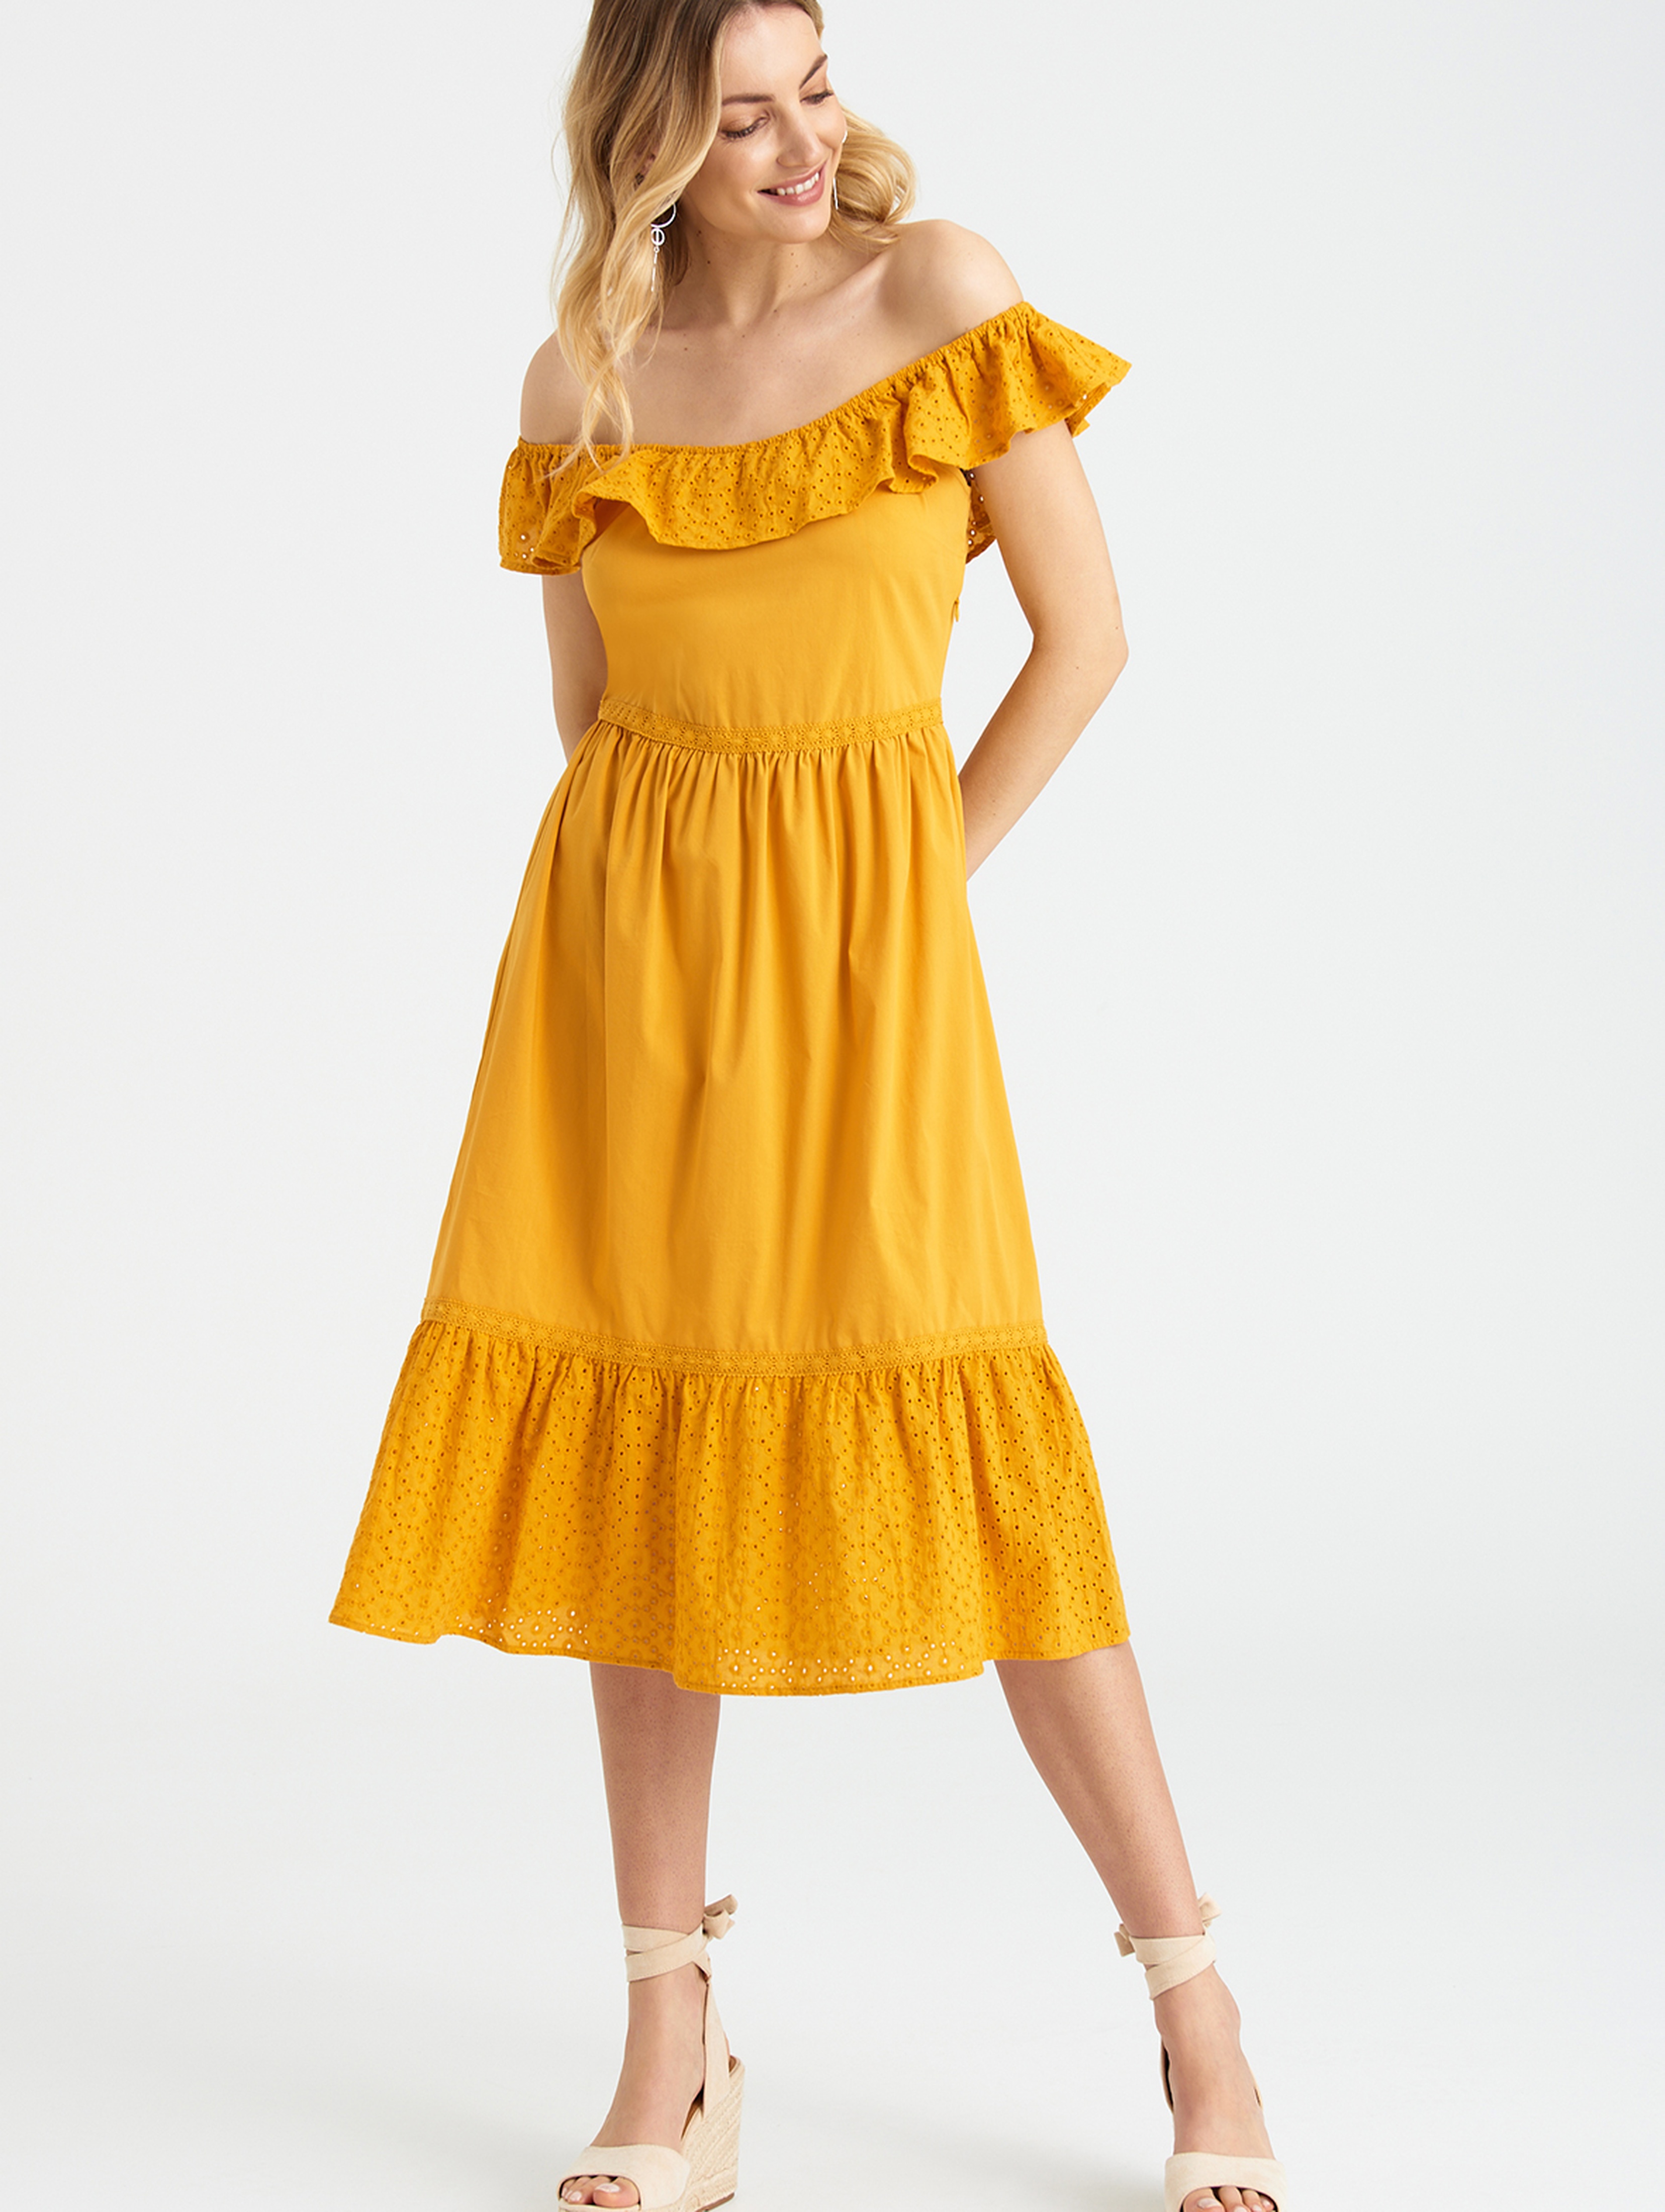 Żółta sukienka damska typu hiszpanka